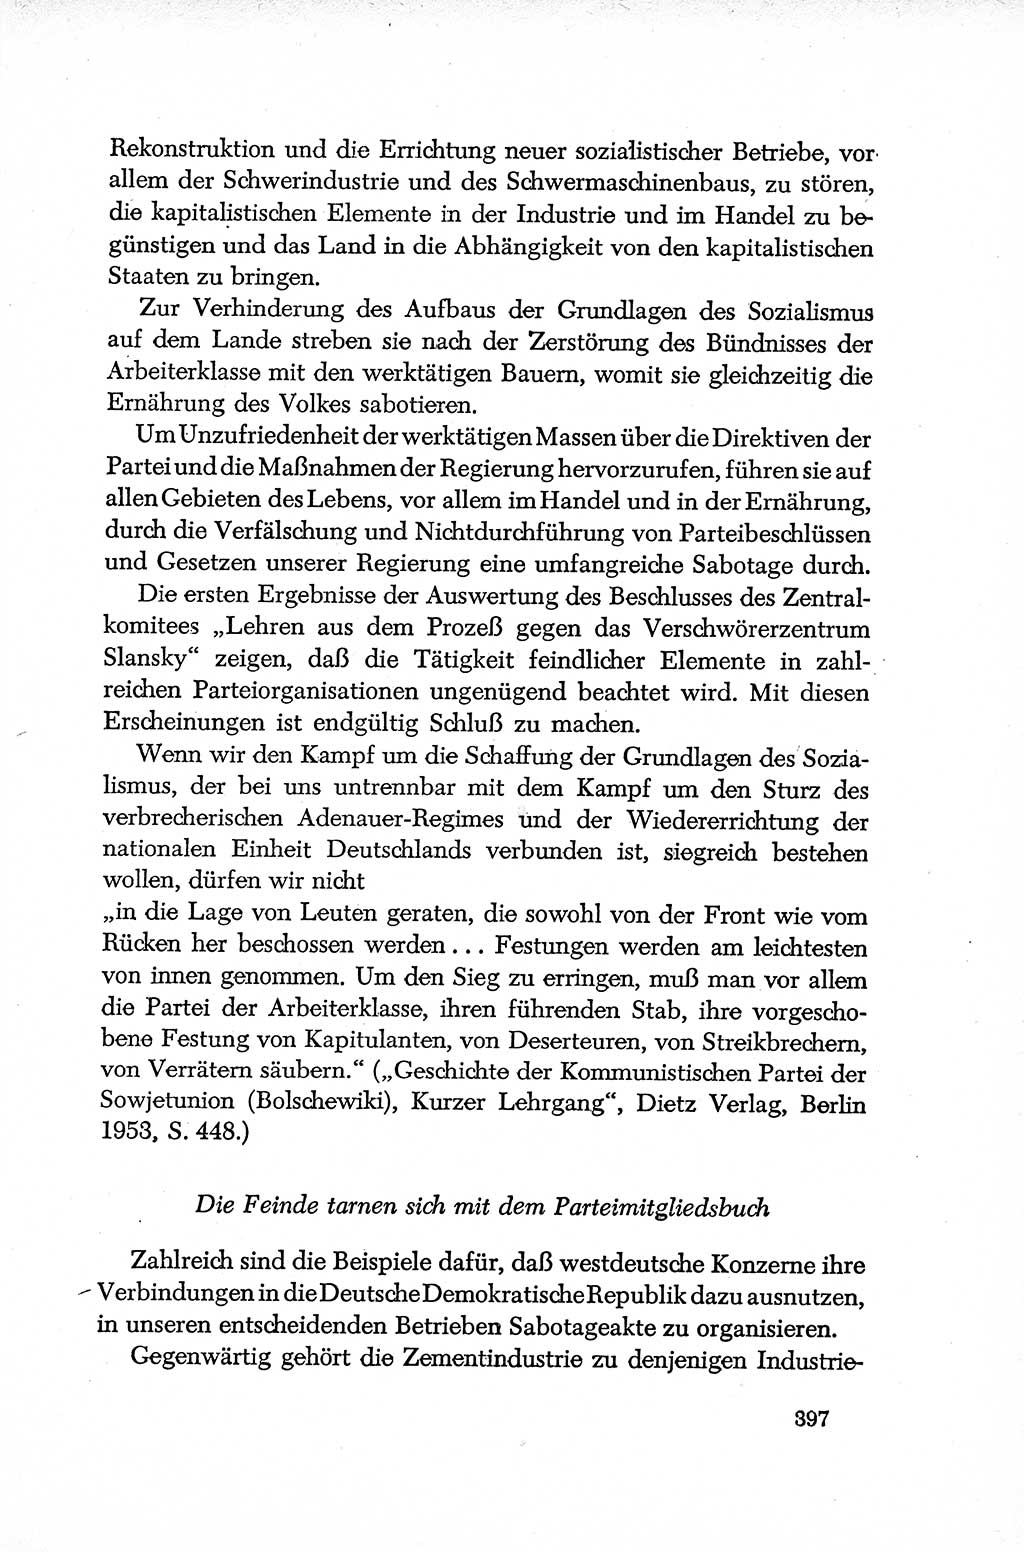 Dokumente der Sozialistischen Einheitspartei Deutschlands (SED) [Deutsche Demokratische Republik (DDR)] 1952-1953, Seite 397 (Dok. SED DDR 1952-1953, S. 397)